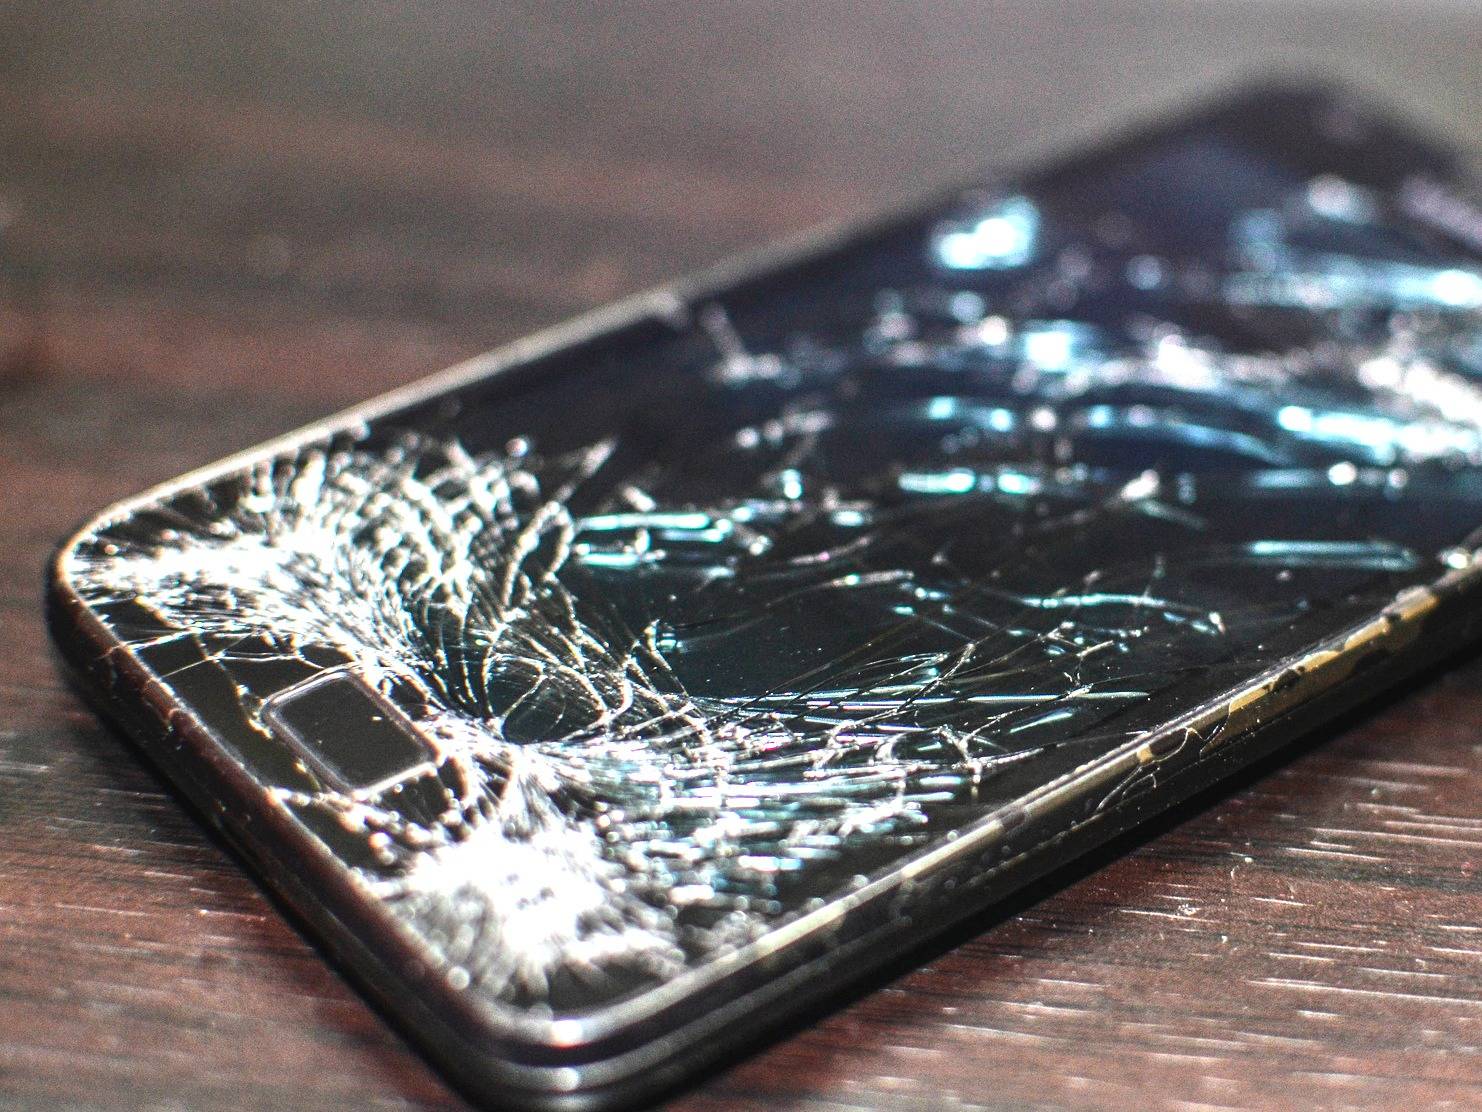 Купить разбитый телефон. Разбитый смартфон. Сломанный смартфон. Разбитый айфон. Старый разбитый смартфон.